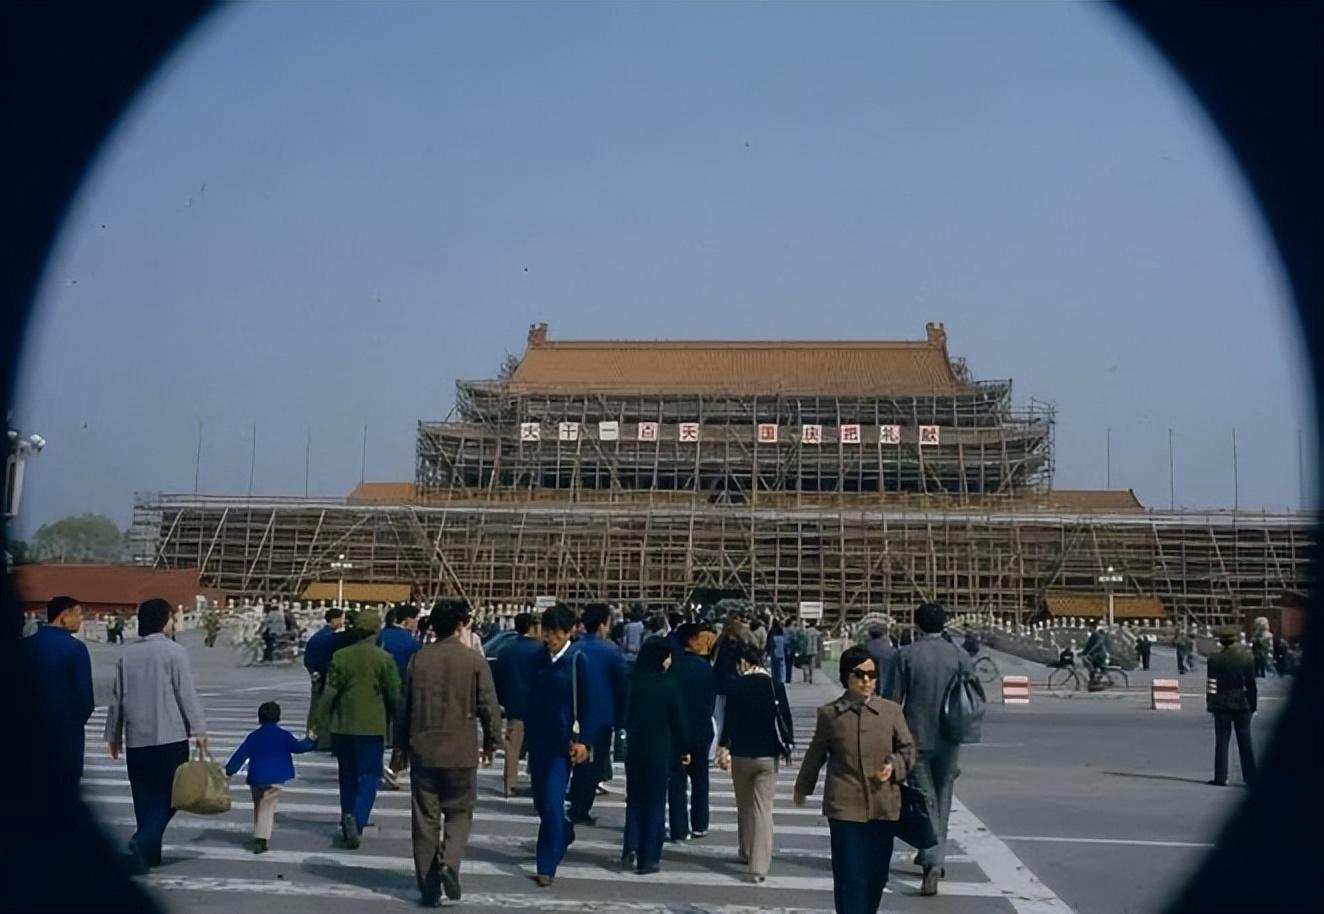 80年代的北京老照片:迷人的街景和日常生活